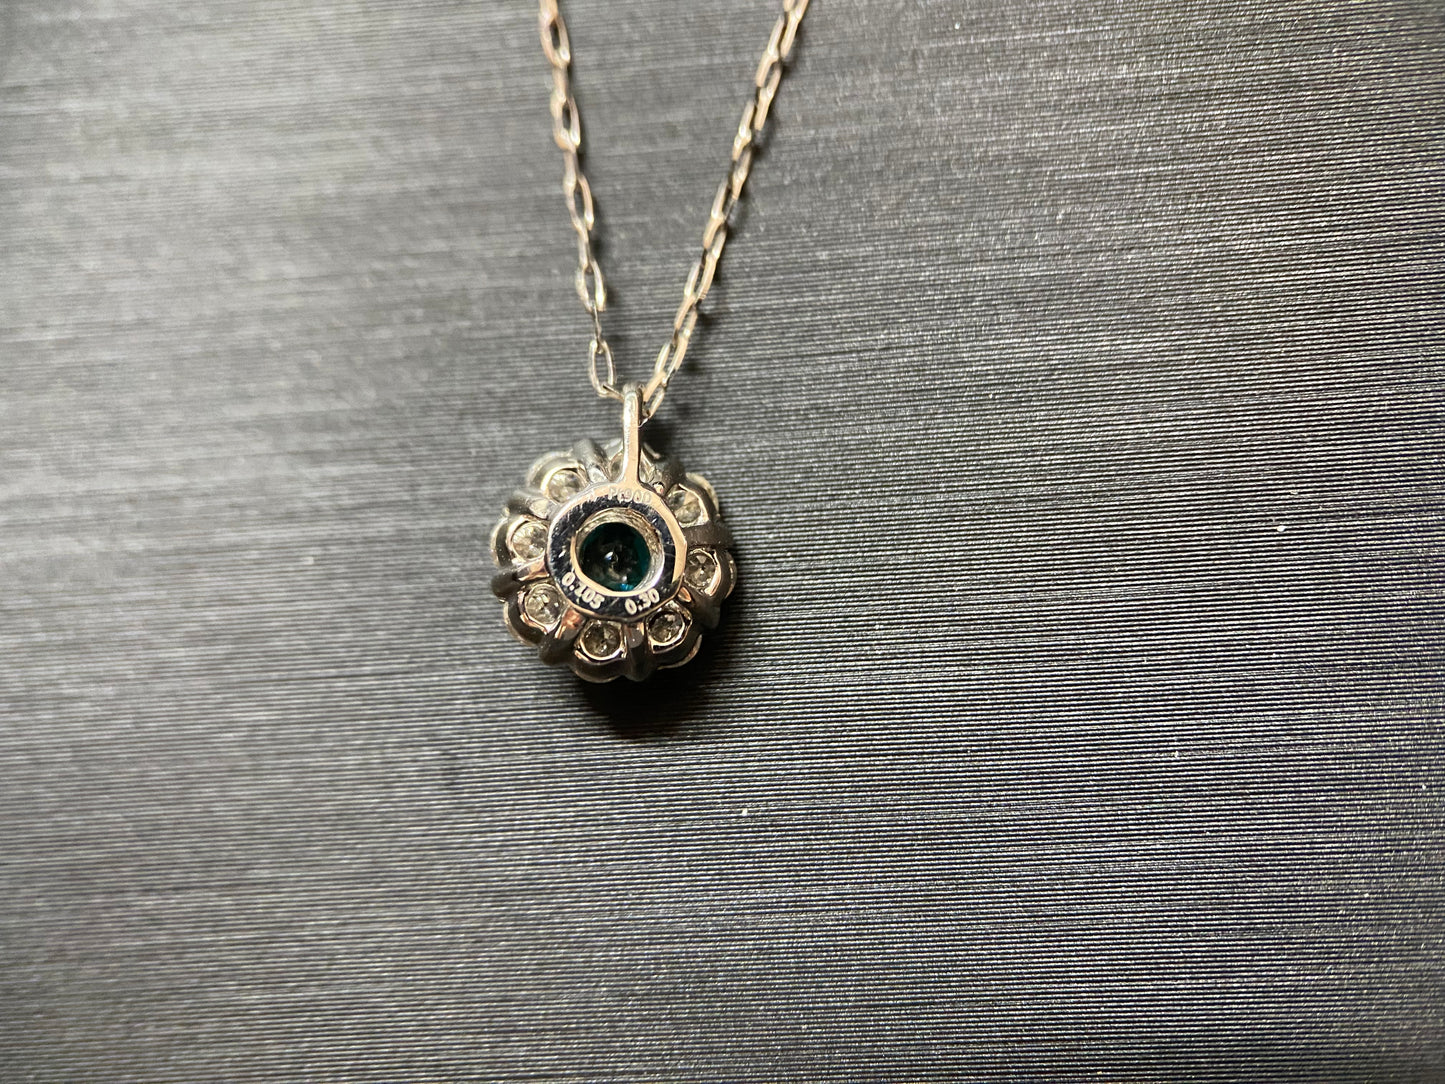 New] [Rare Stone] Paraiba Tourmaline Necklace Jewelry